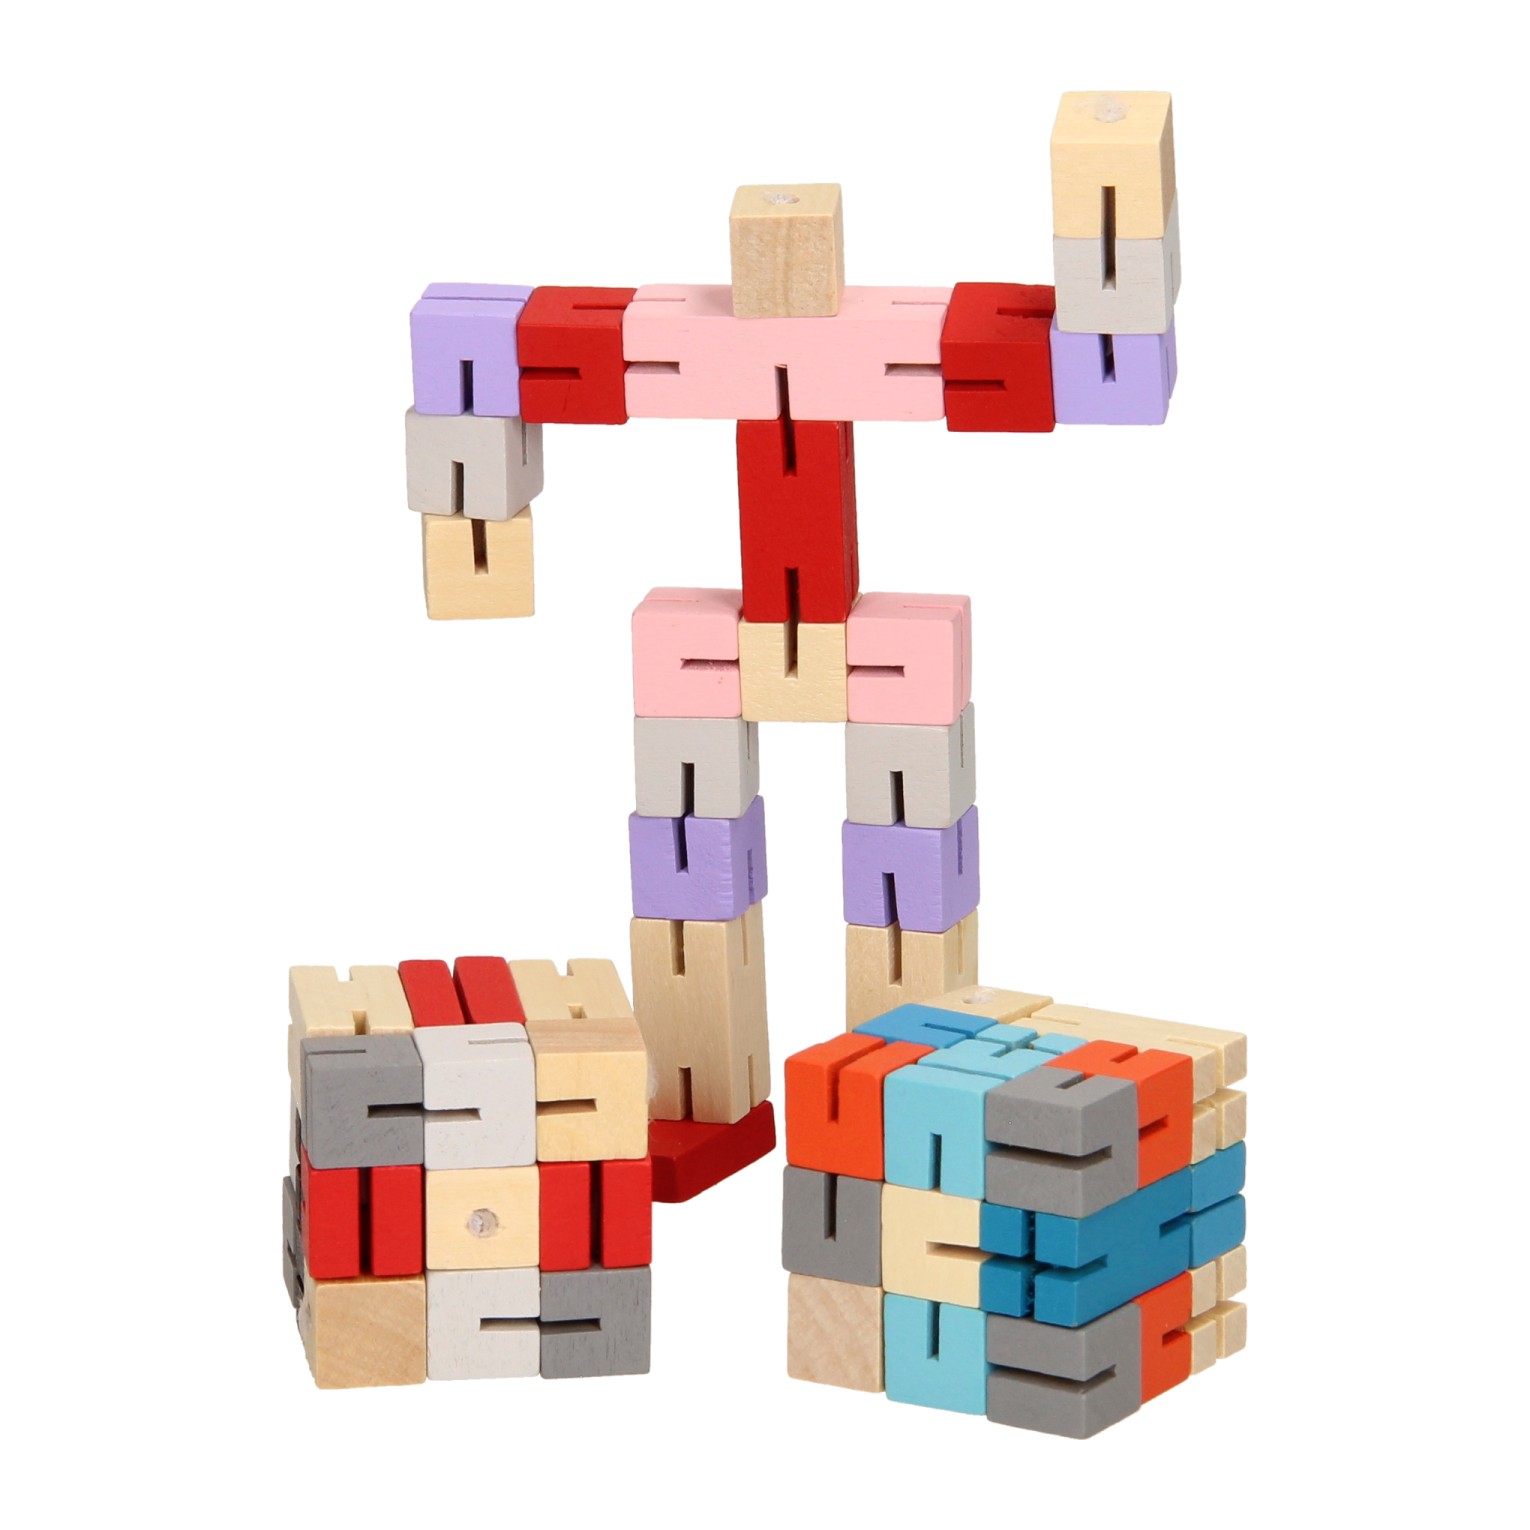 Robots Twist Puzzle, 300 Pieces, PuzzleTwist